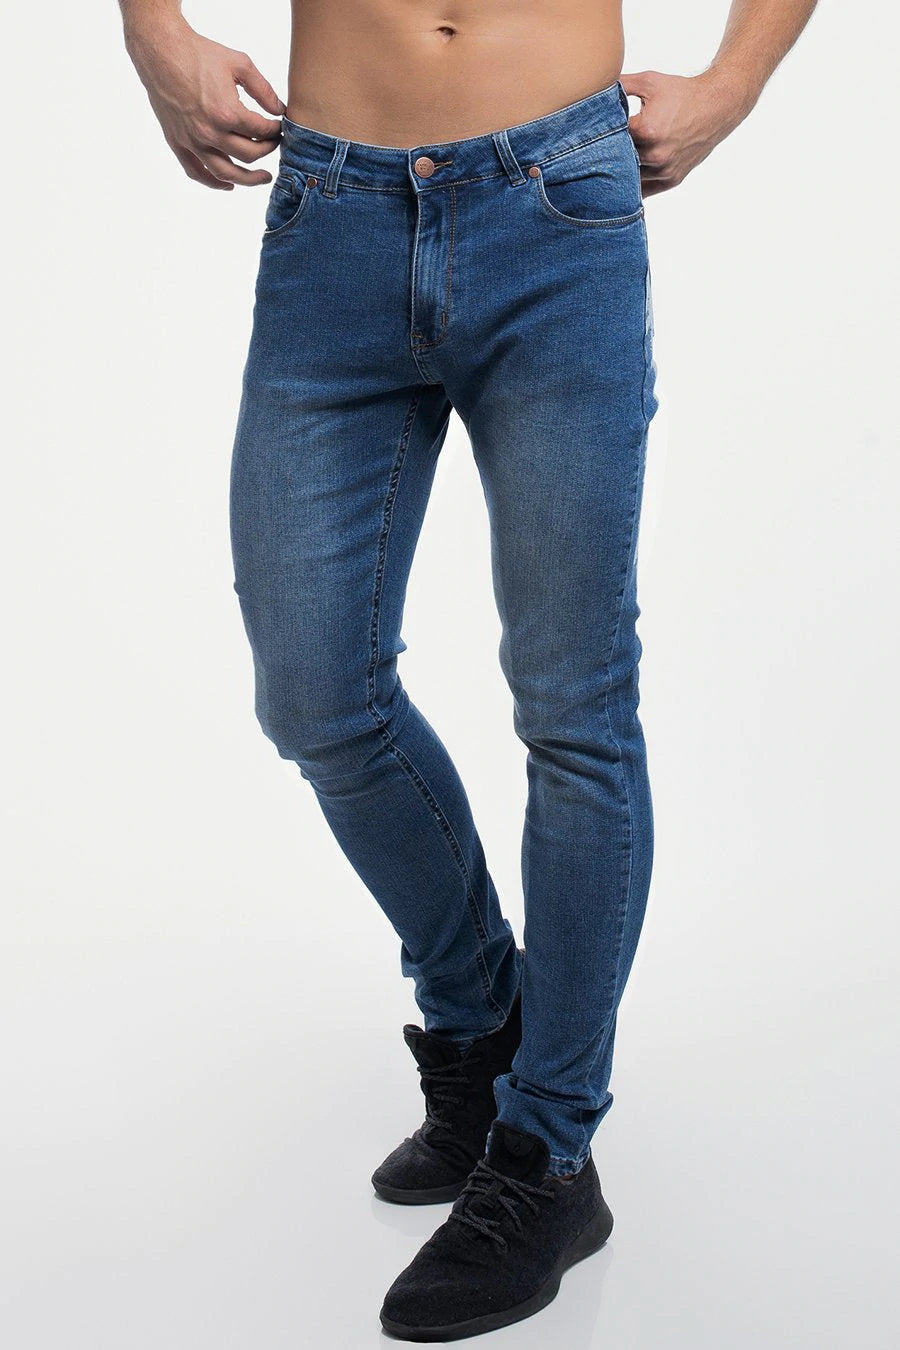 Barbell Apparel Men's Slim Athletic Fit Jeans Destroyed Dark